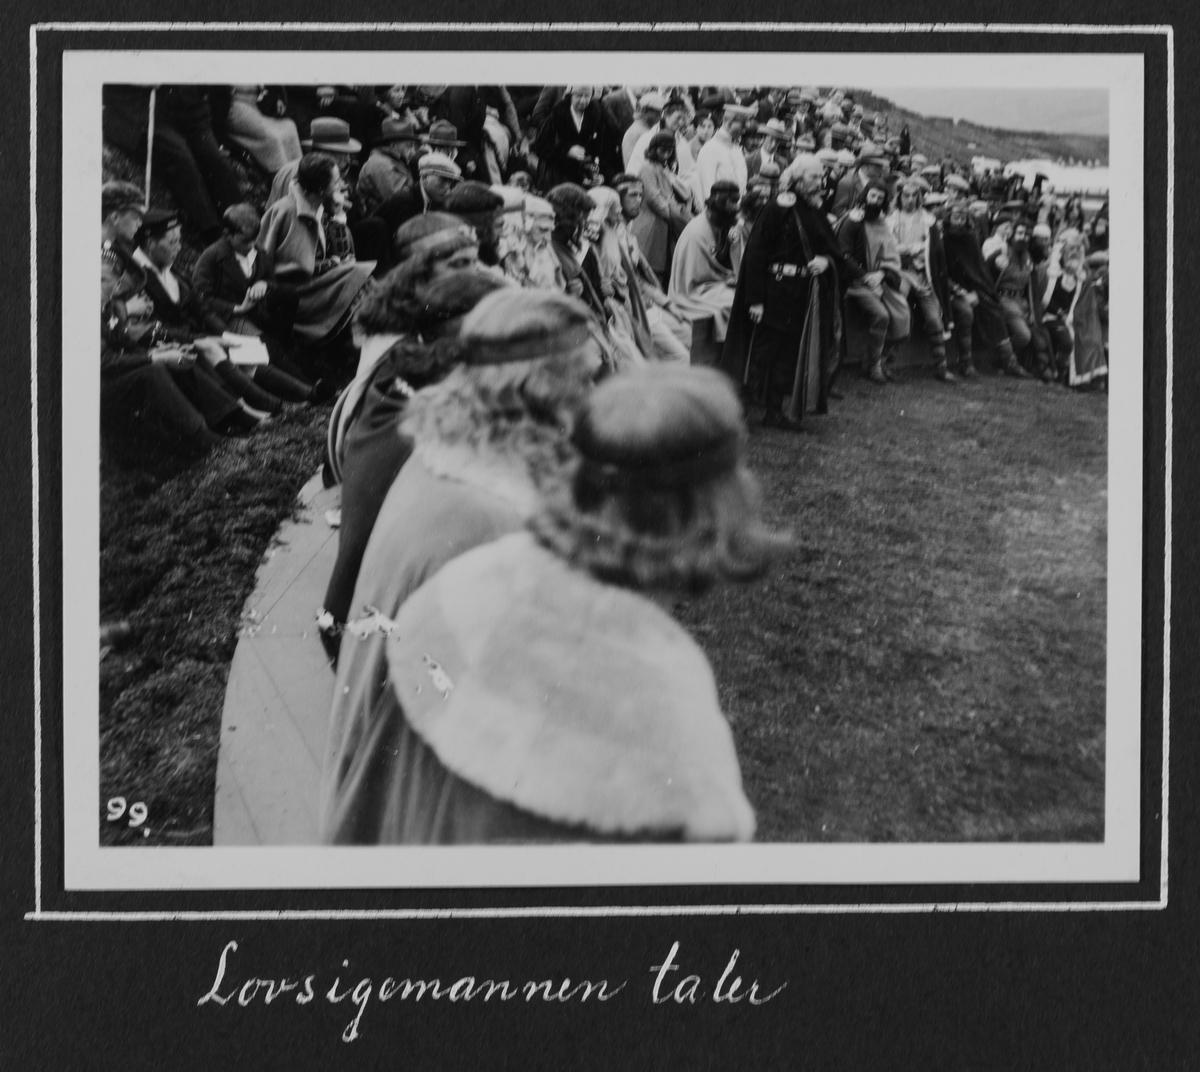 Fra 1000 årsfesten for Alltinget på Island i 1930. Lovsigemannen taler